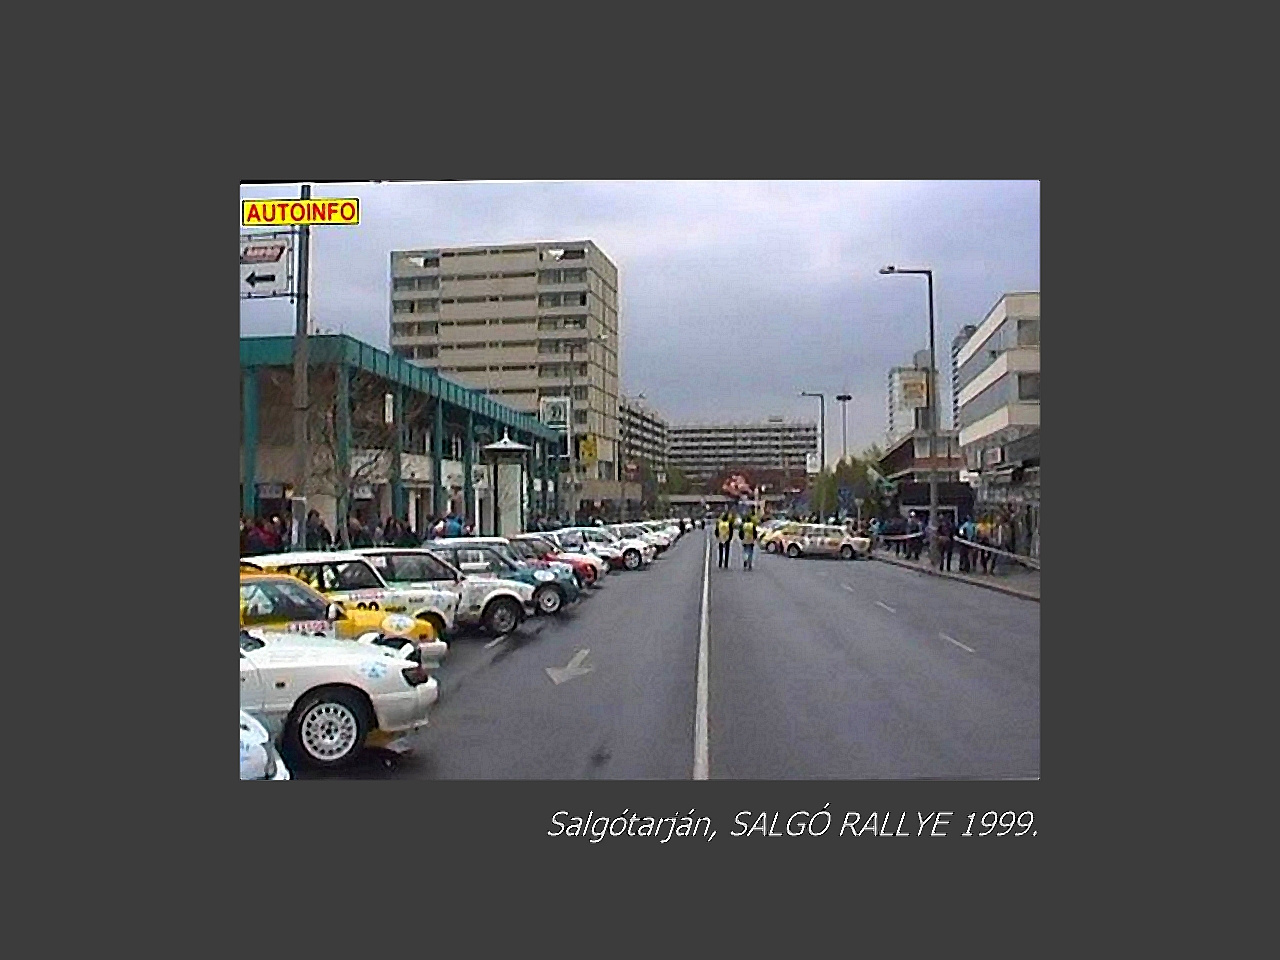 Salgótarján régen, SALGÓ RALLYE volt 1999.